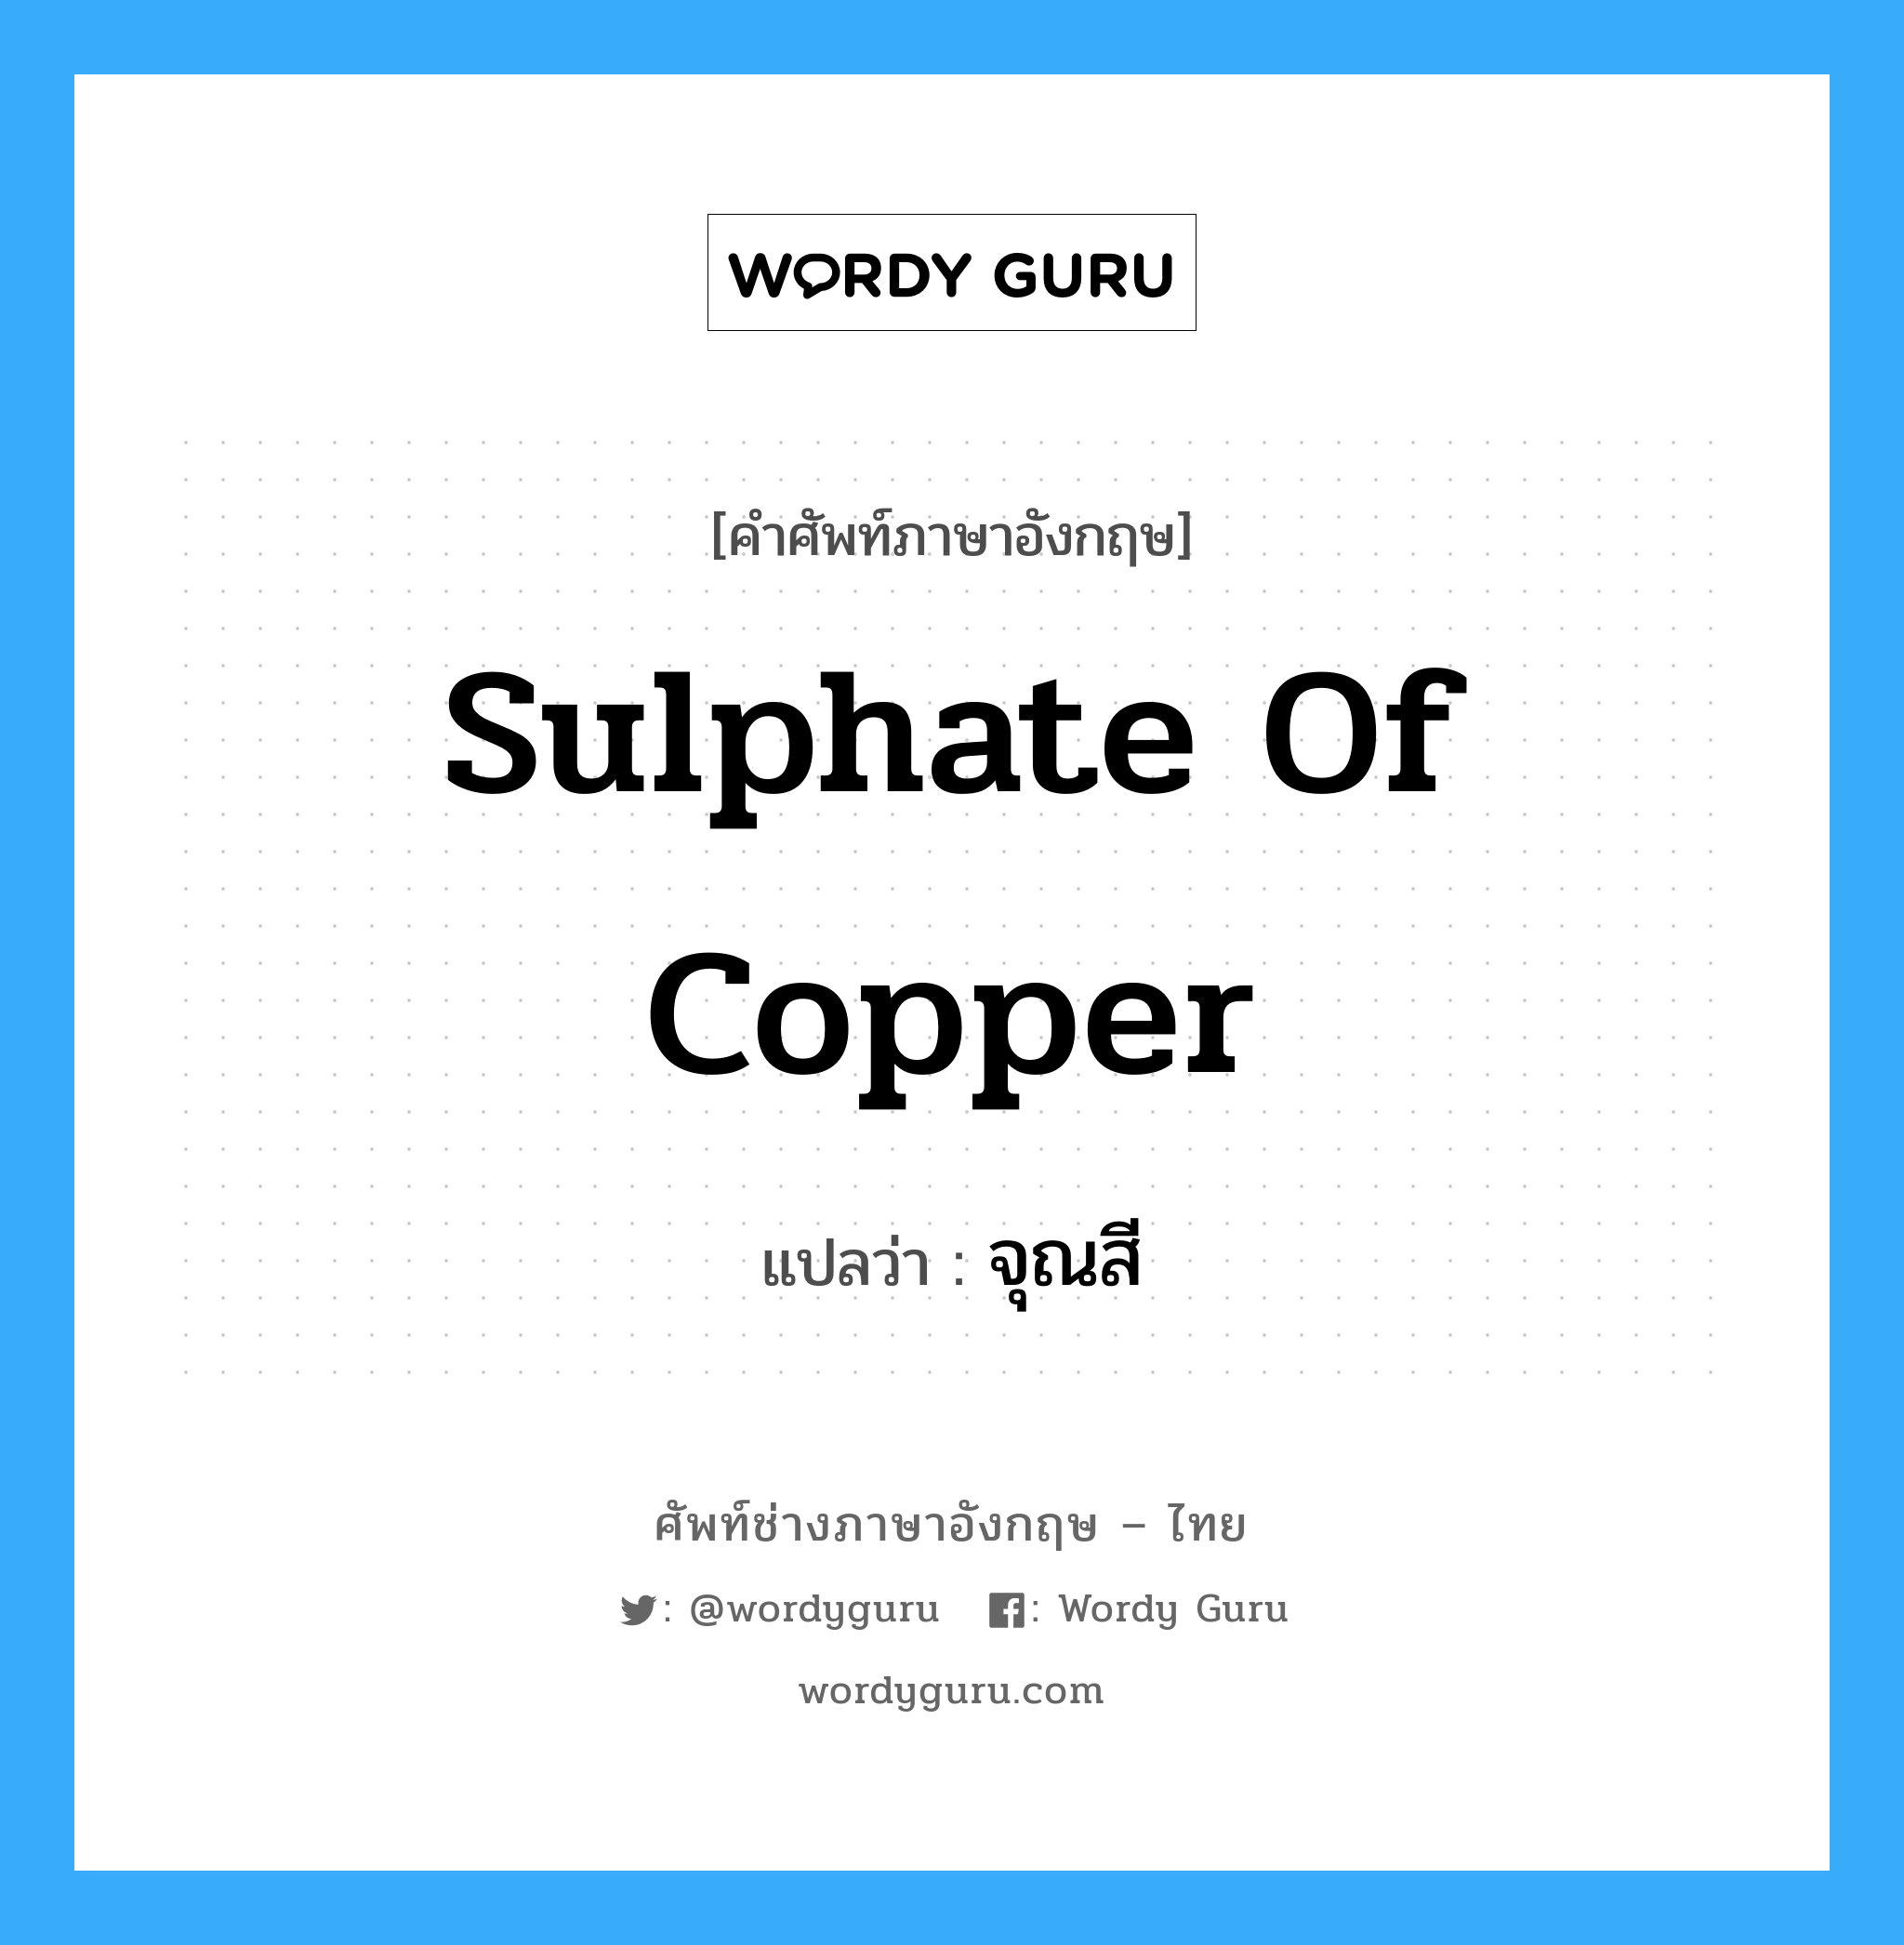 จุณสี ภาษาอังกฤษ?, คำศัพท์ช่างภาษาอังกฤษ - ไทย จุณสี คำศัพท์ภาษาอังกฤษ จุณสี แปลว่า sulphate of copper